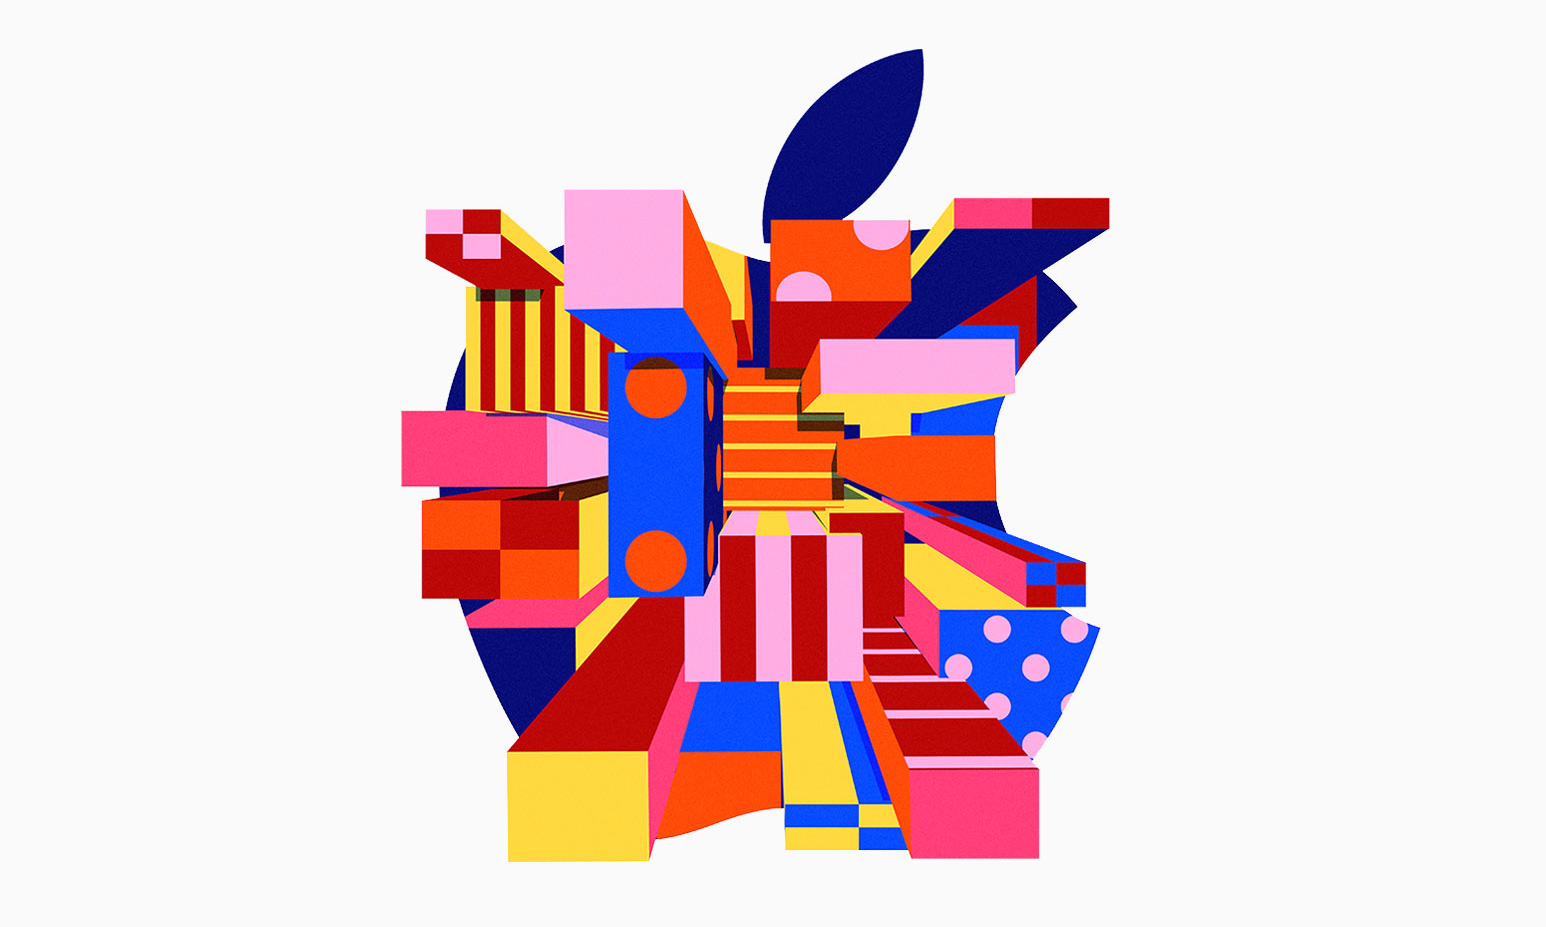 苹果新品发布会将于北京时间 10 月 30 日晚 10 点召开